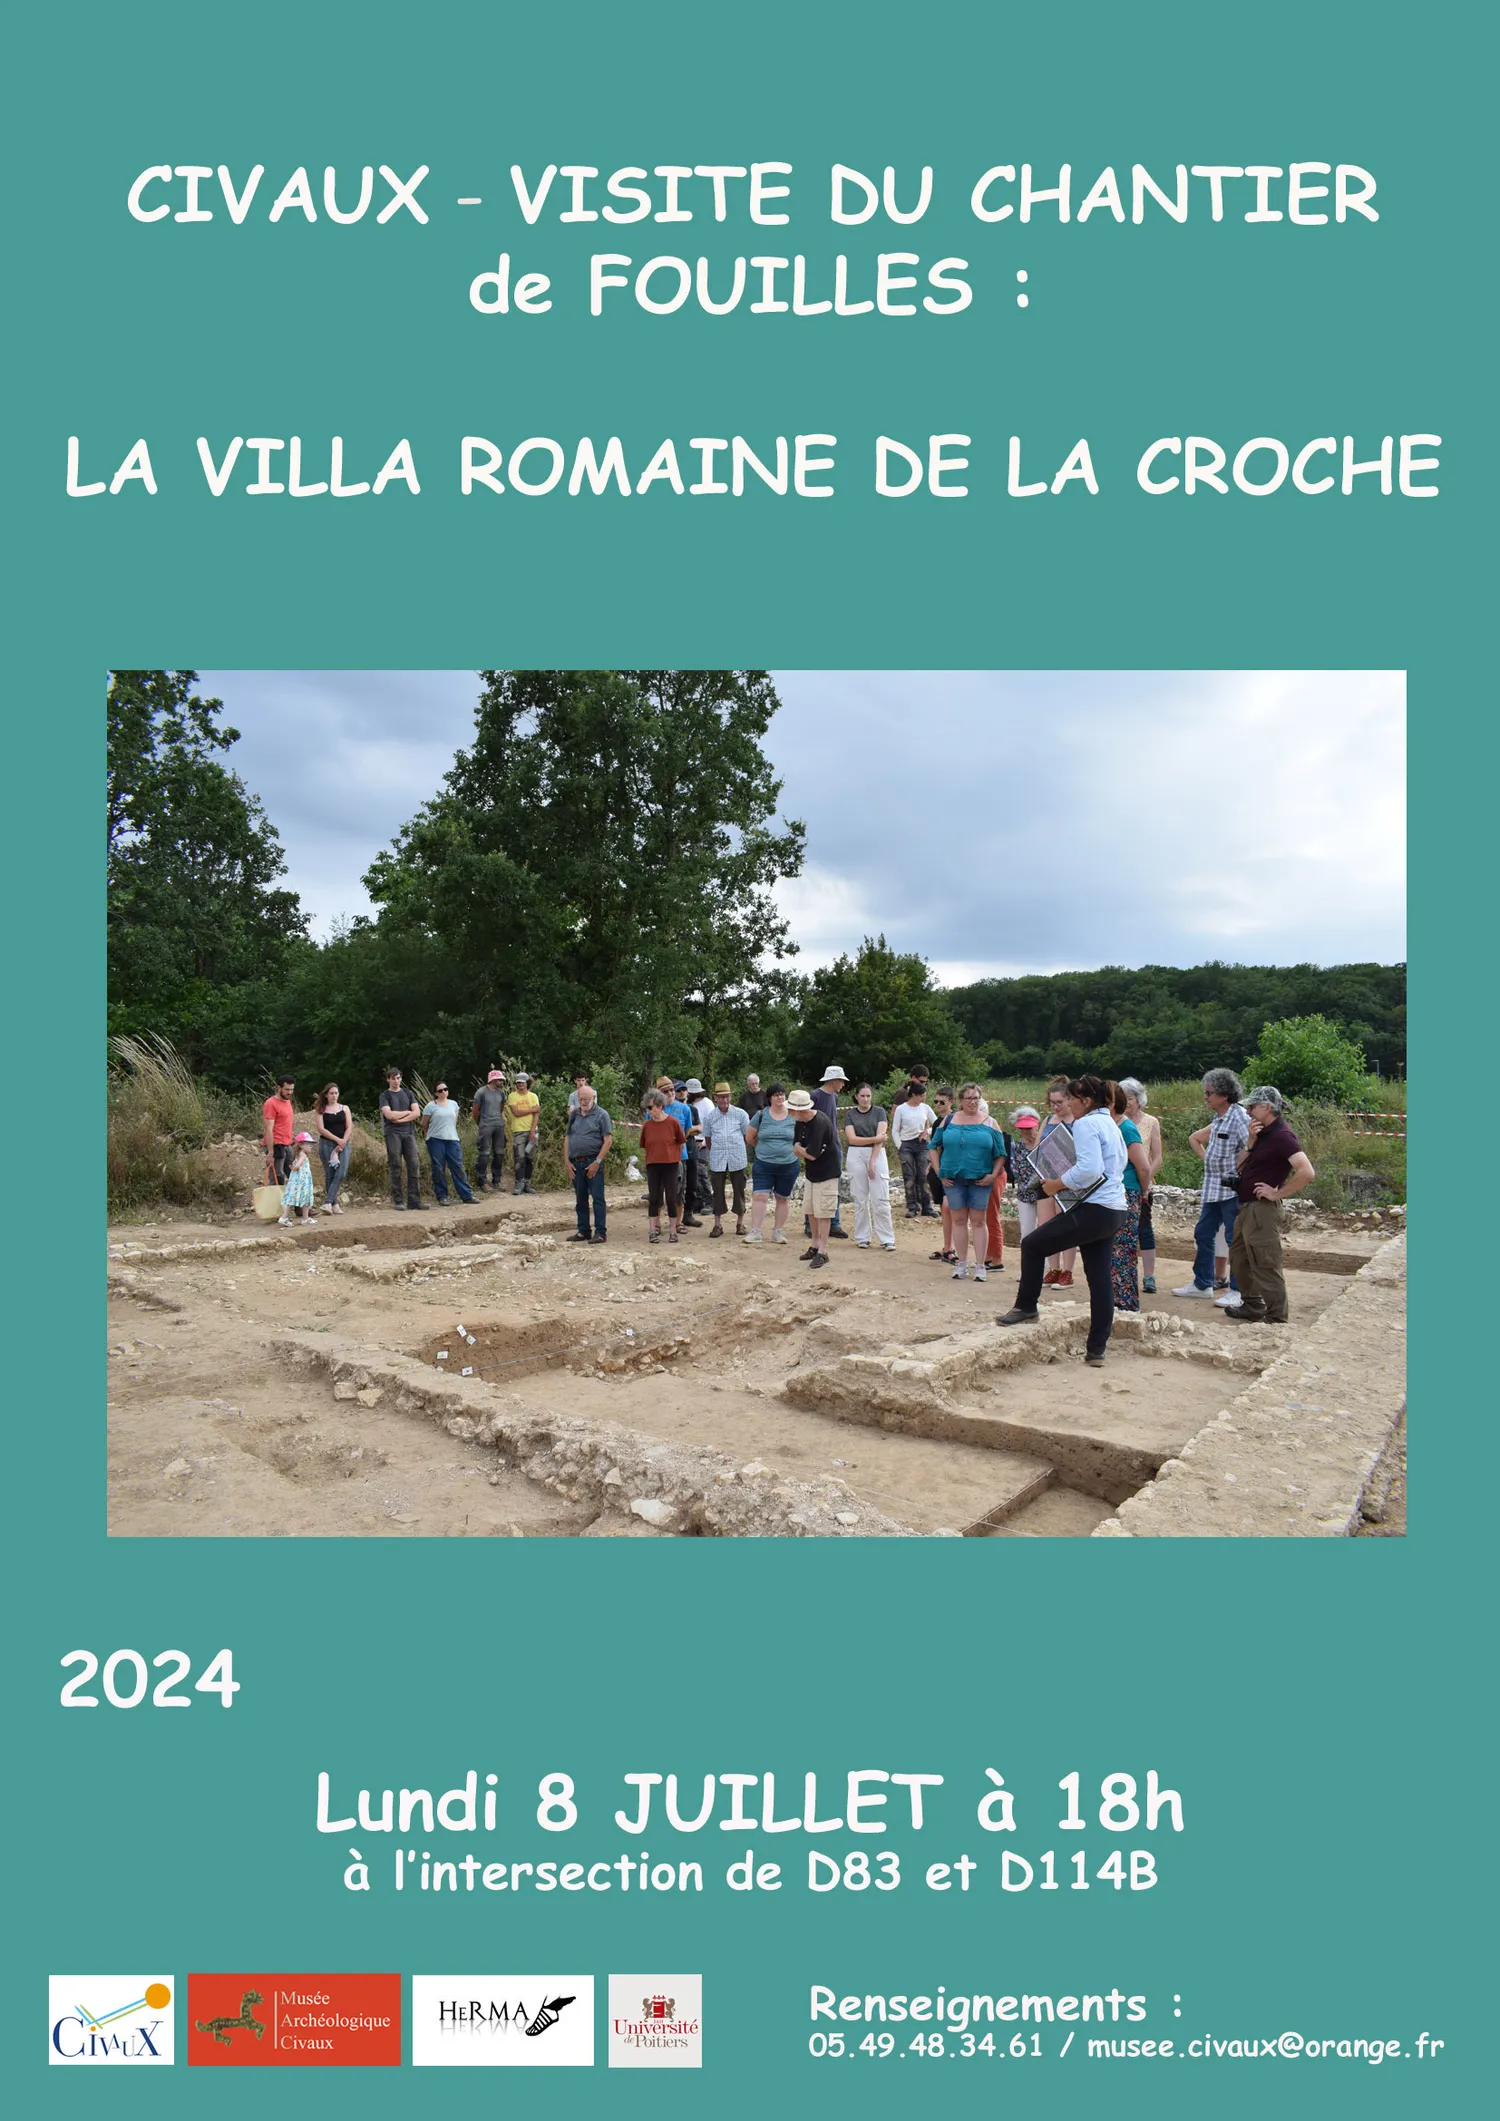 Image qui illustre: Visite du chantier de fouilles de la villa romaine de La Croche à Civaux - 0